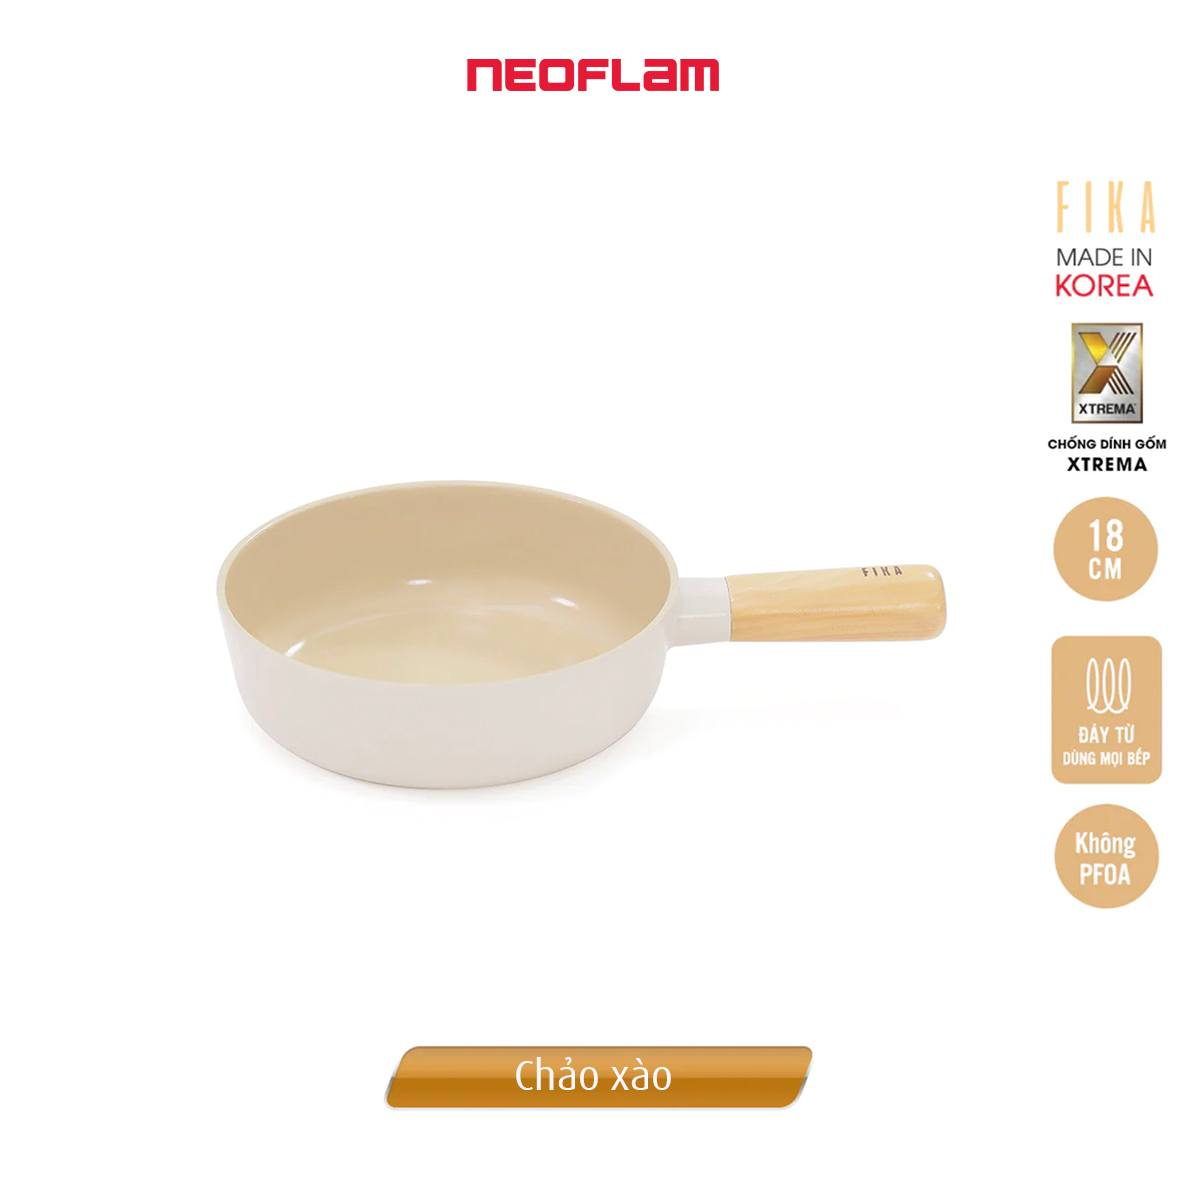 Bộ nồi chảo Neoflam Fika 7 món. Made in Korea. Hàng có sẵn, giao ngay